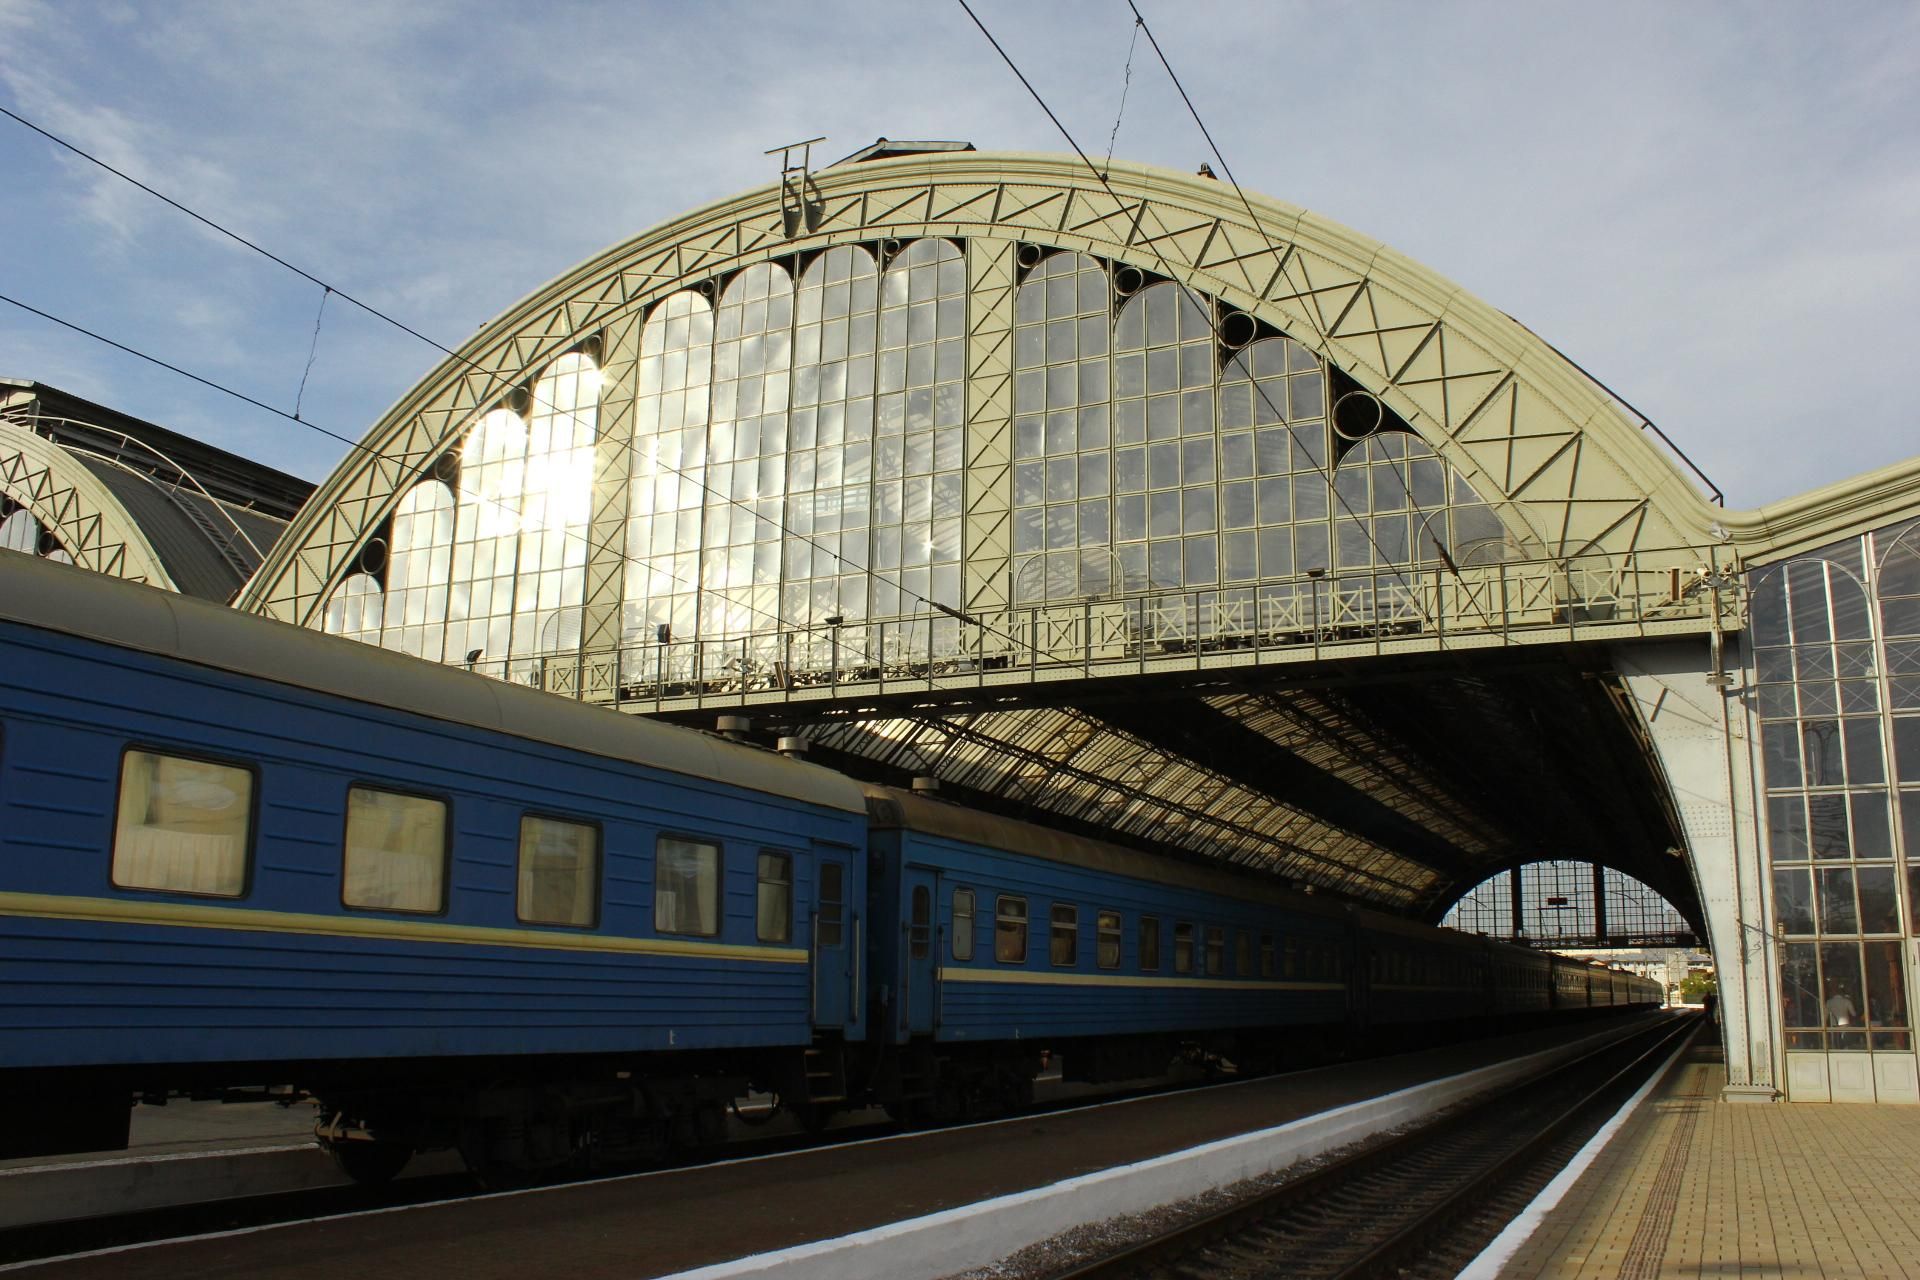 Едет по жаре 29 часов: Укрзализныця убрала кондиционирование в поезде